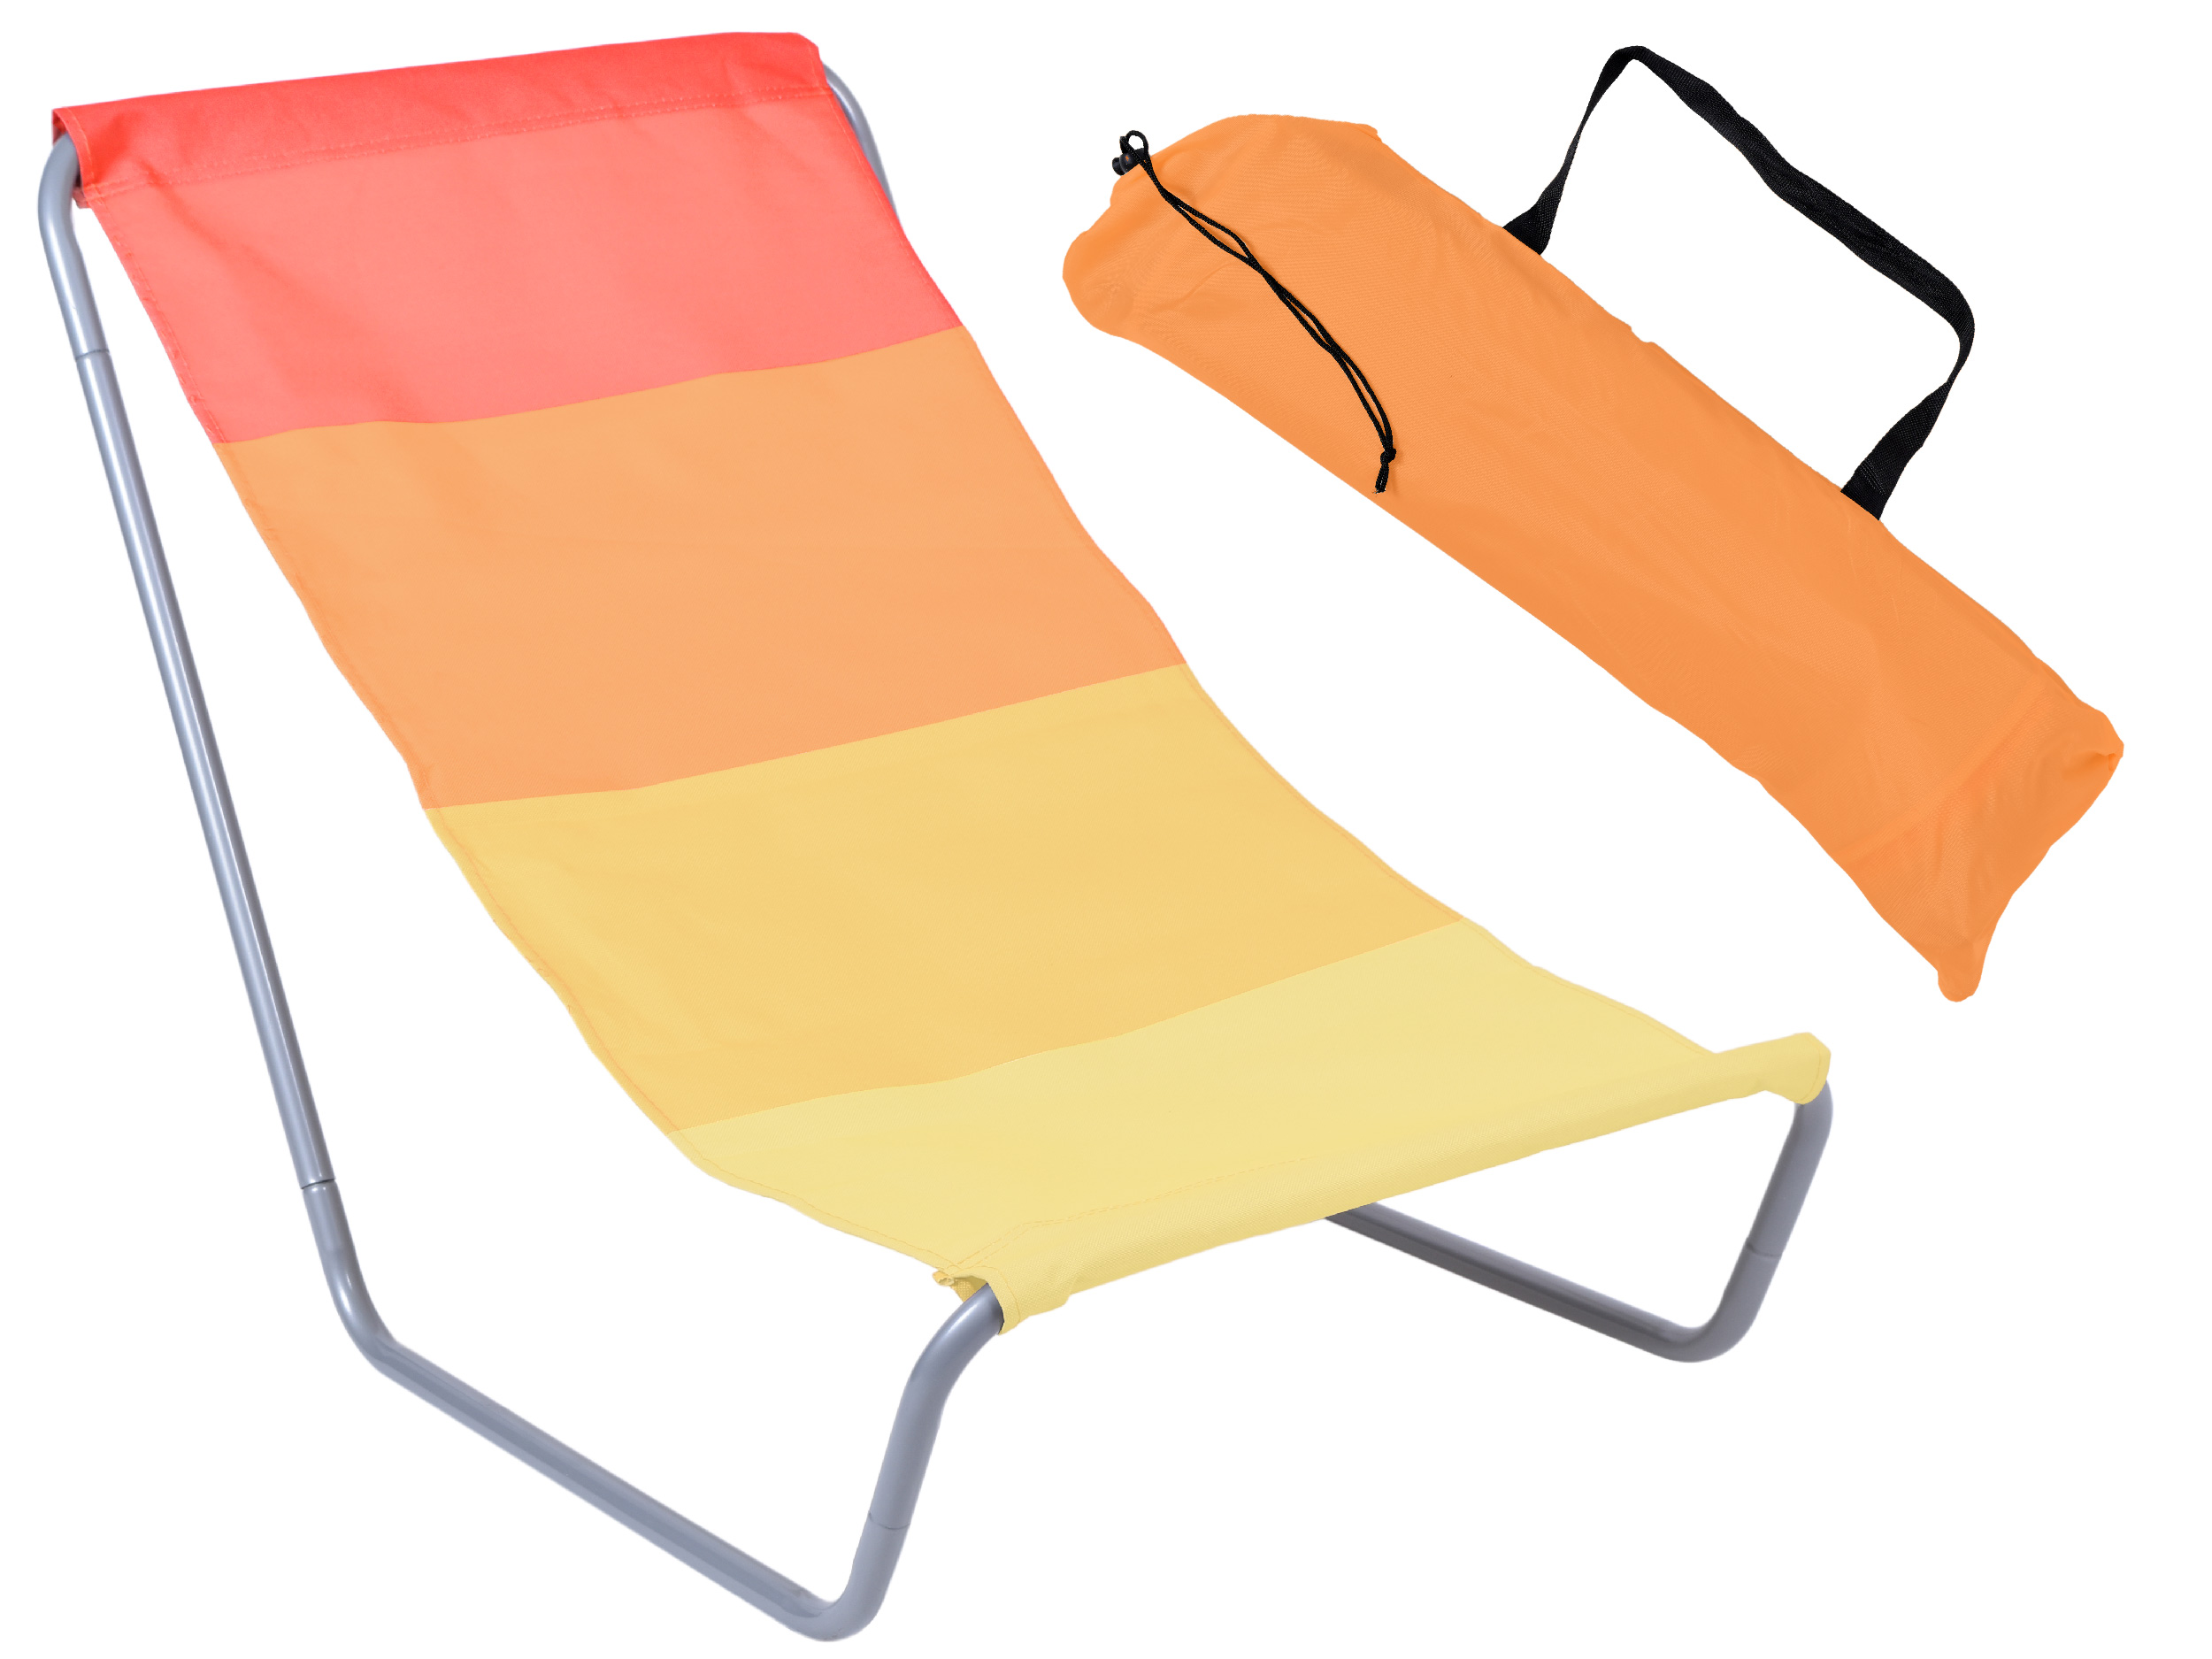 Leżak turystyczny plażowy OLEK składany